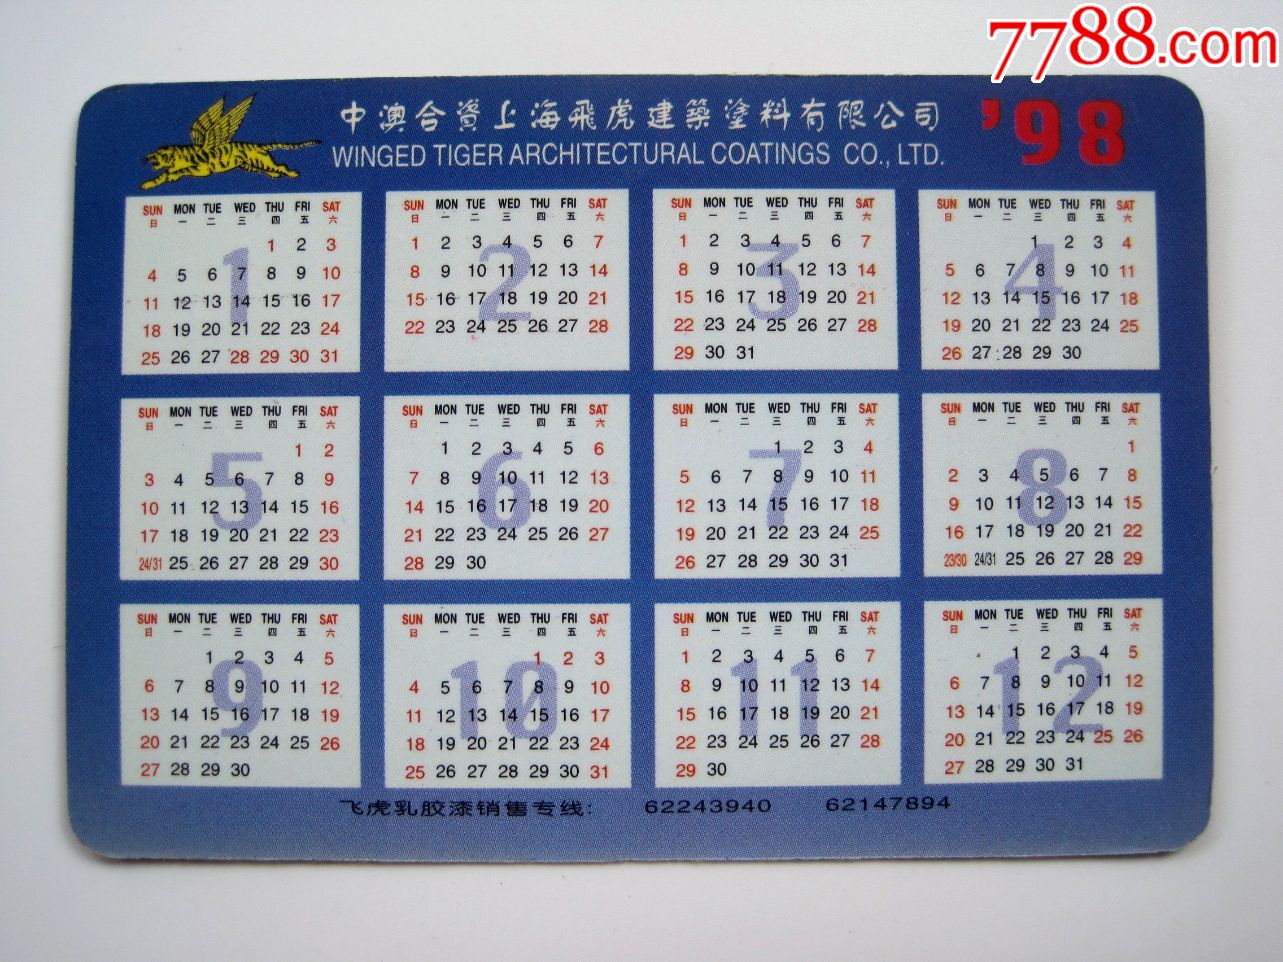 【飞虎乳胶漆】1998年上海飞虎建筑涂料有限公司广告年历片!